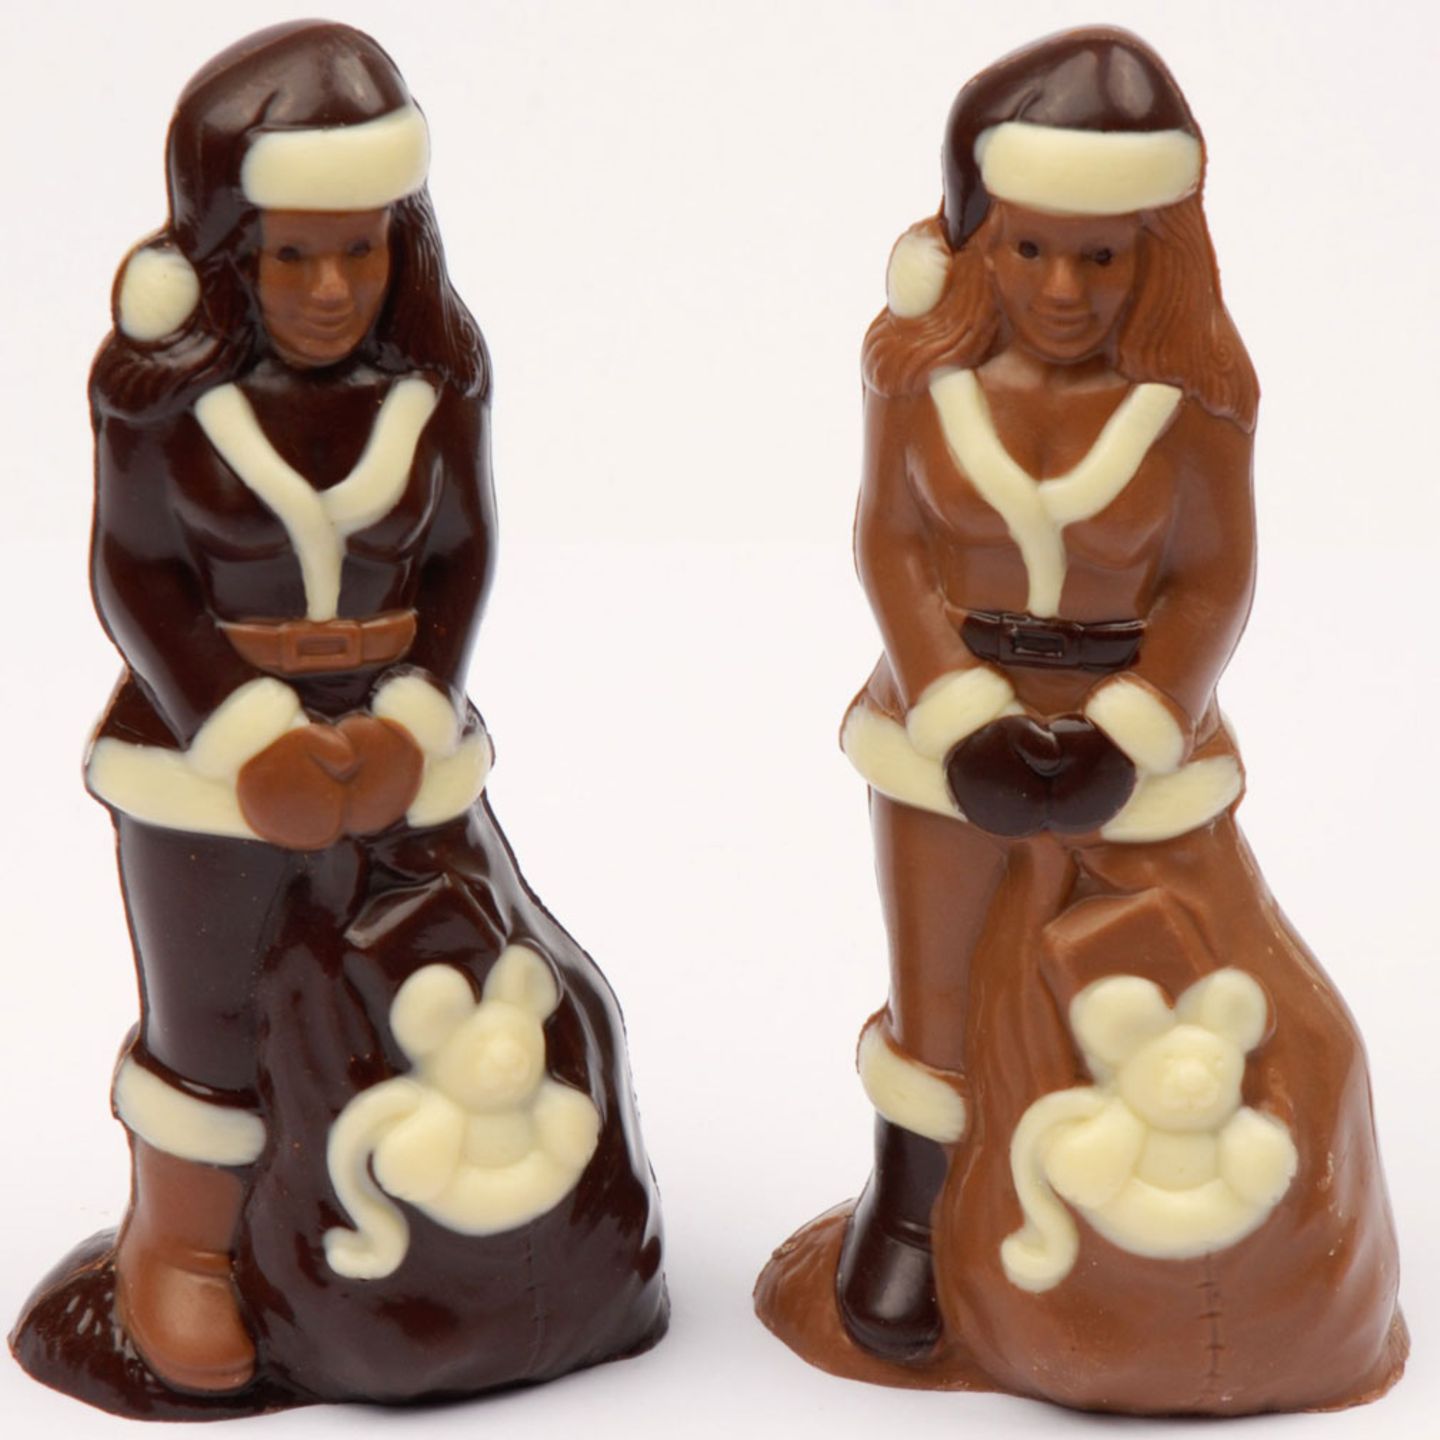 Weihnachtsfrau aus Schokolade